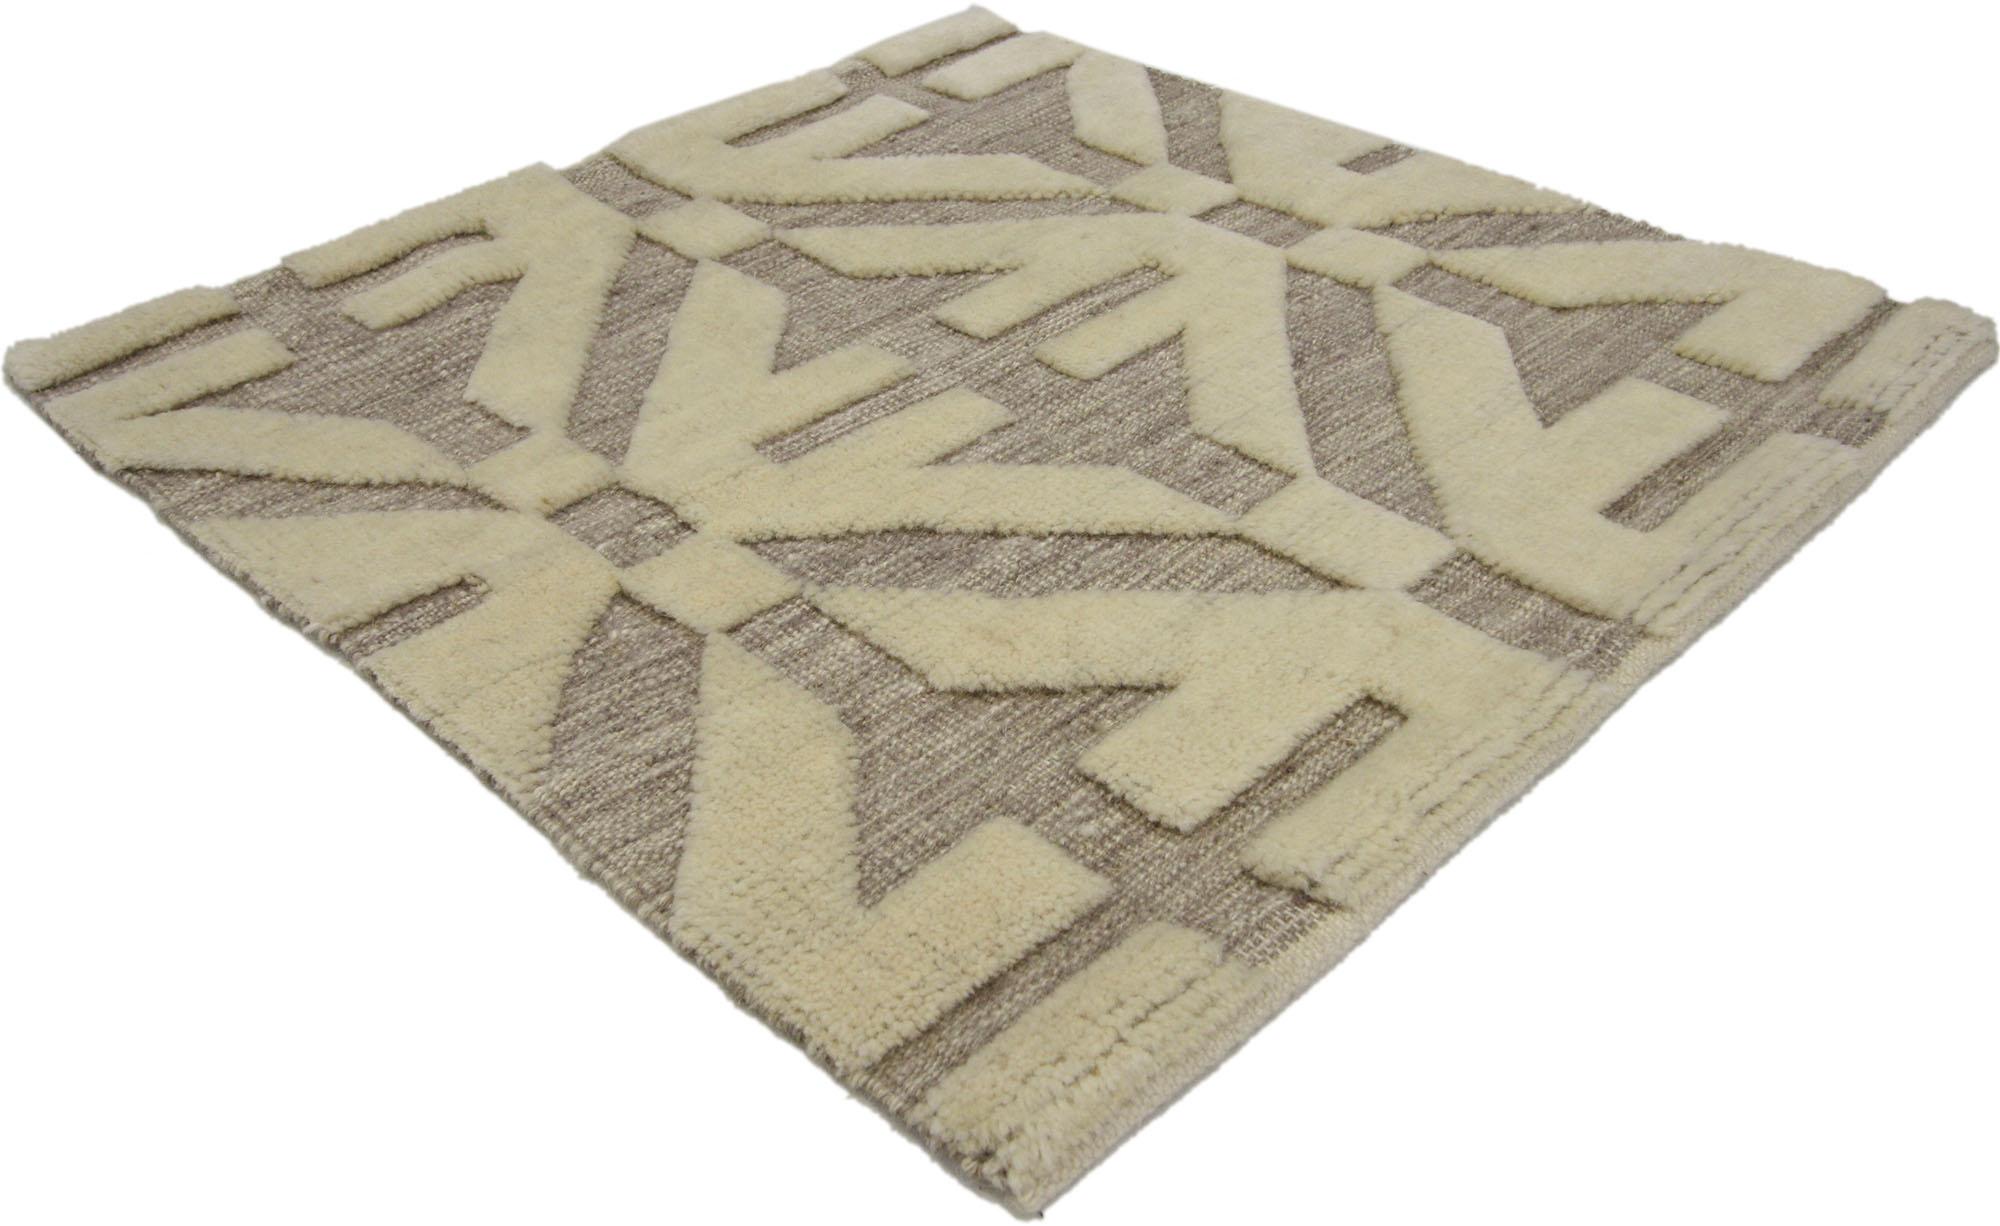 30400 Moderner geometrischer Hoch-Tief-Wagireh-Teppich, 02'02 x 02'02. Zeitgenössische Wagireh-Teppiche aus Indien sind eine moderne Interpretation traditioneller Wagireh-Teppiche, bei denen die komplizierte Webtechnik verwendet wird, um kleine